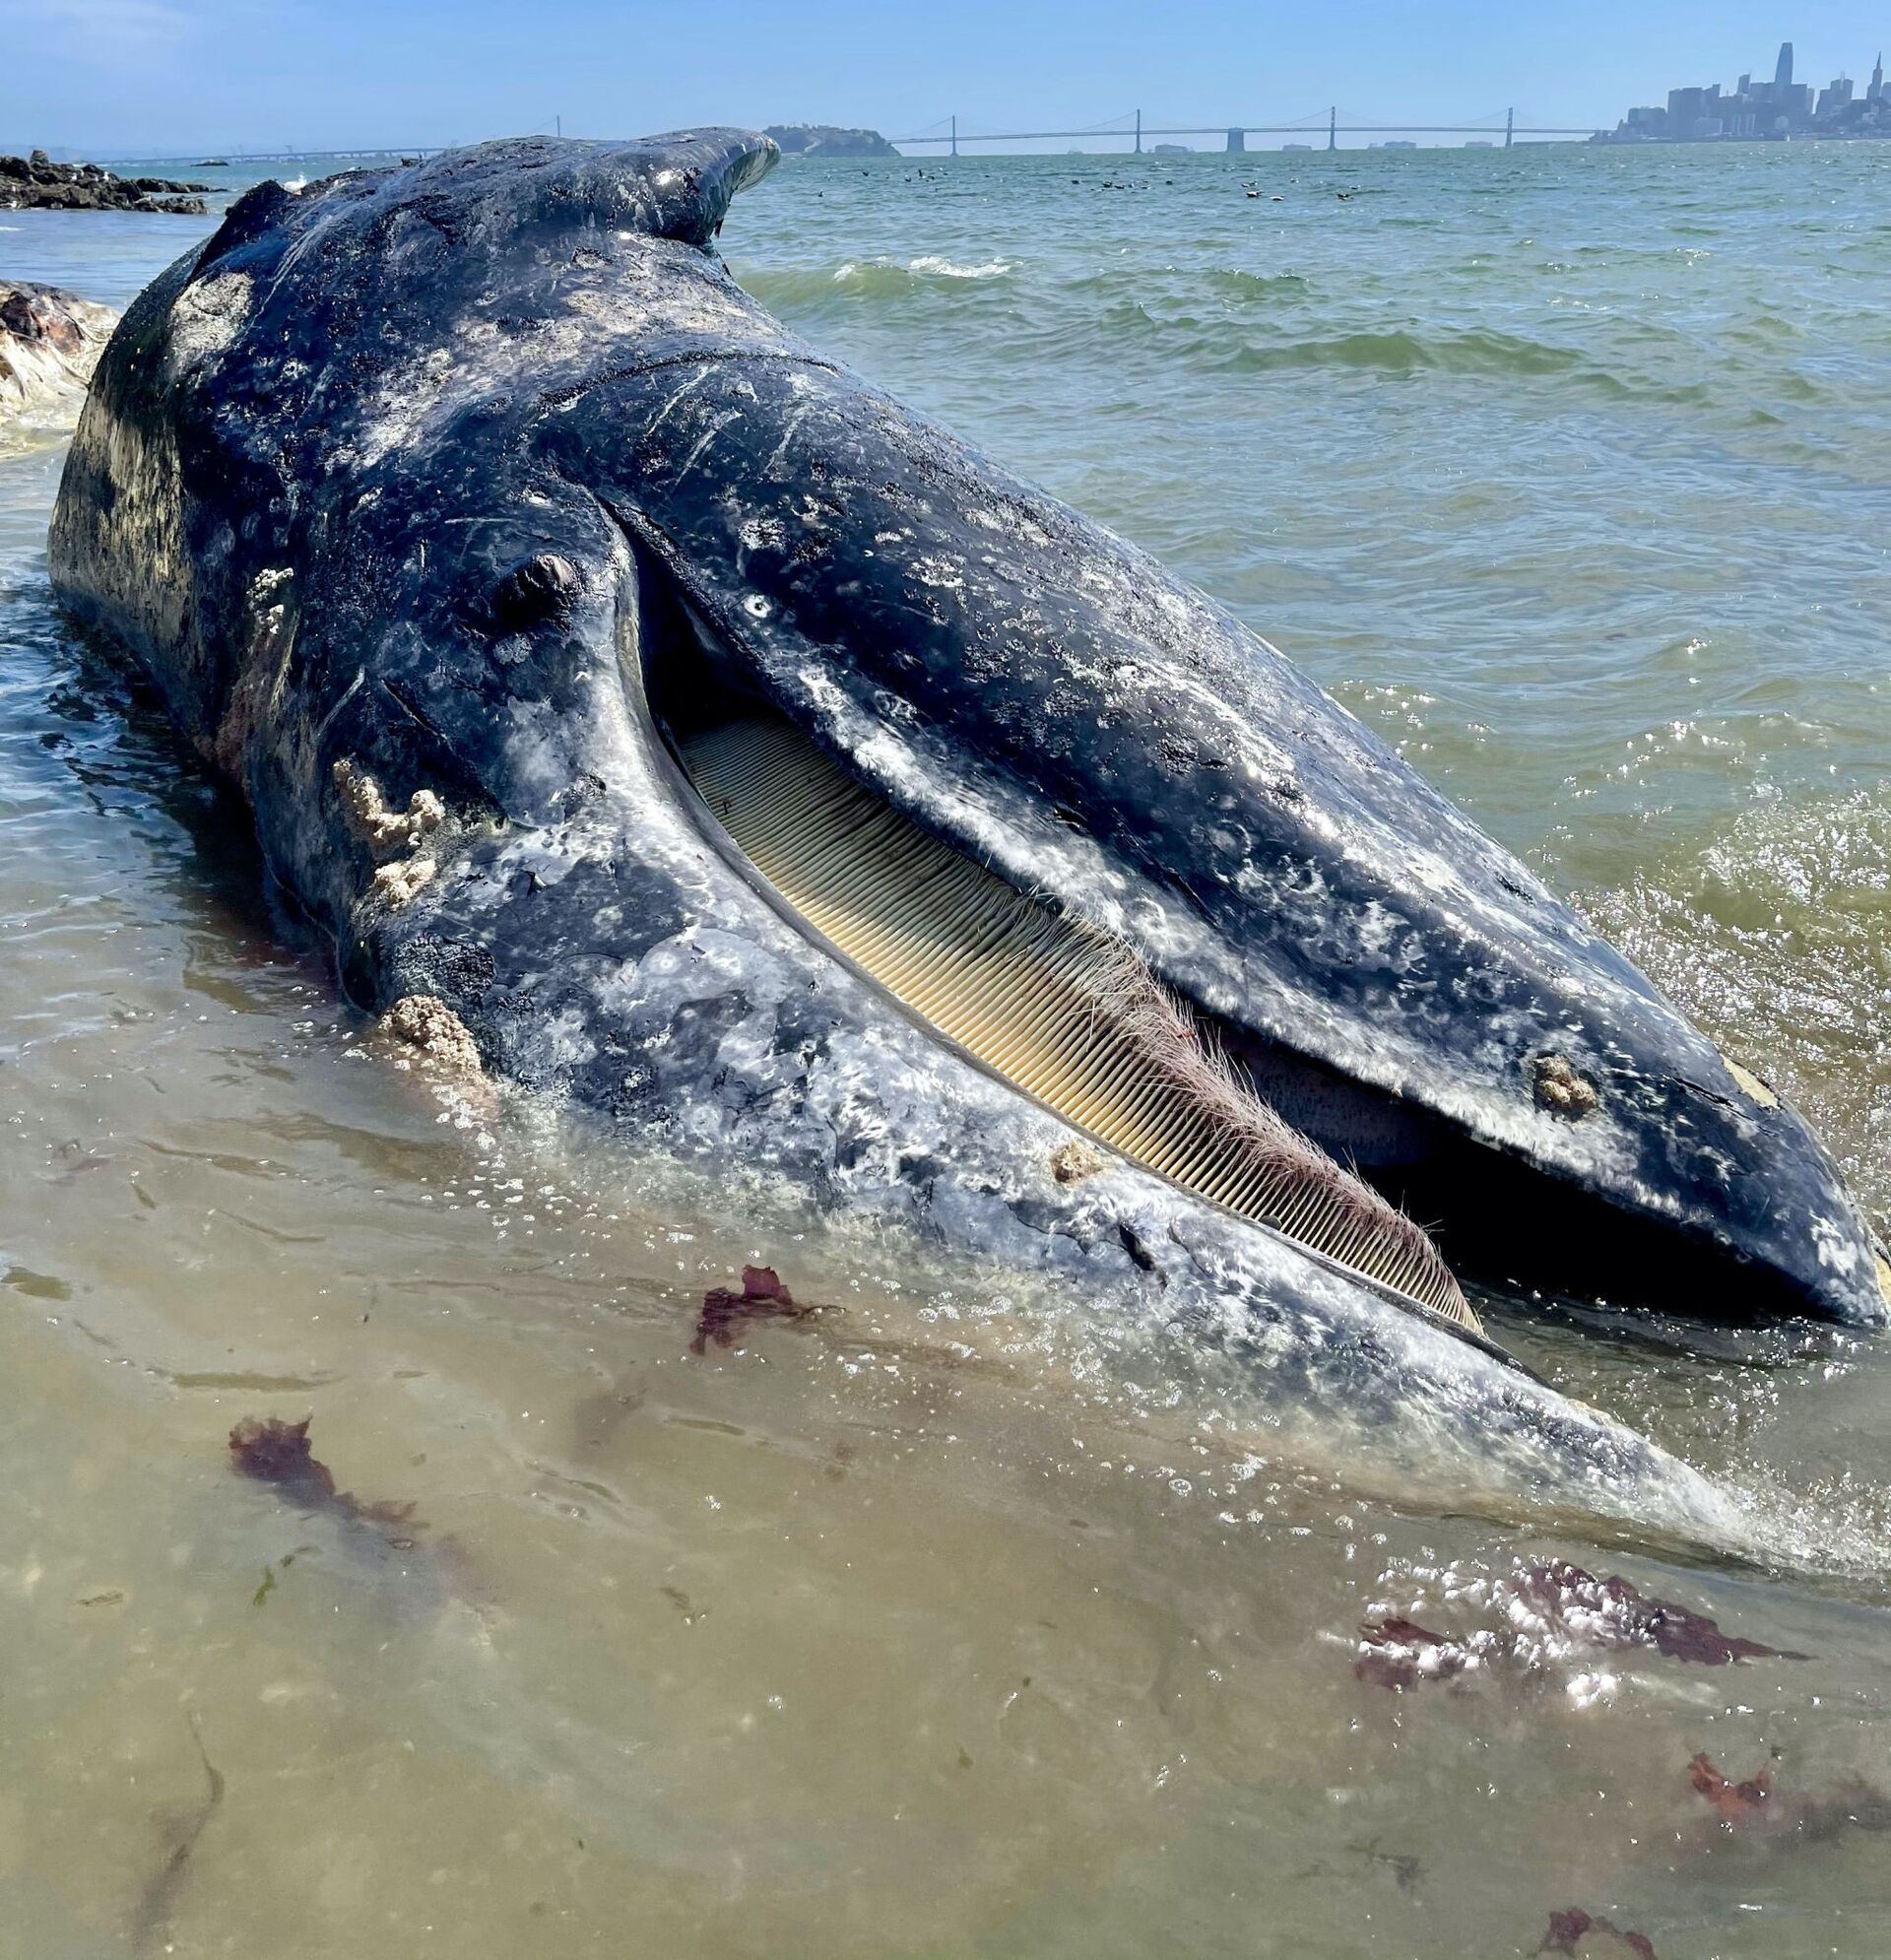 Em apenas 9 dias, 4 baleias aparecem mortas em São Francisco, informa mídia (FOTOS) - Sputnik Brasil, 1920, 10.04.2021